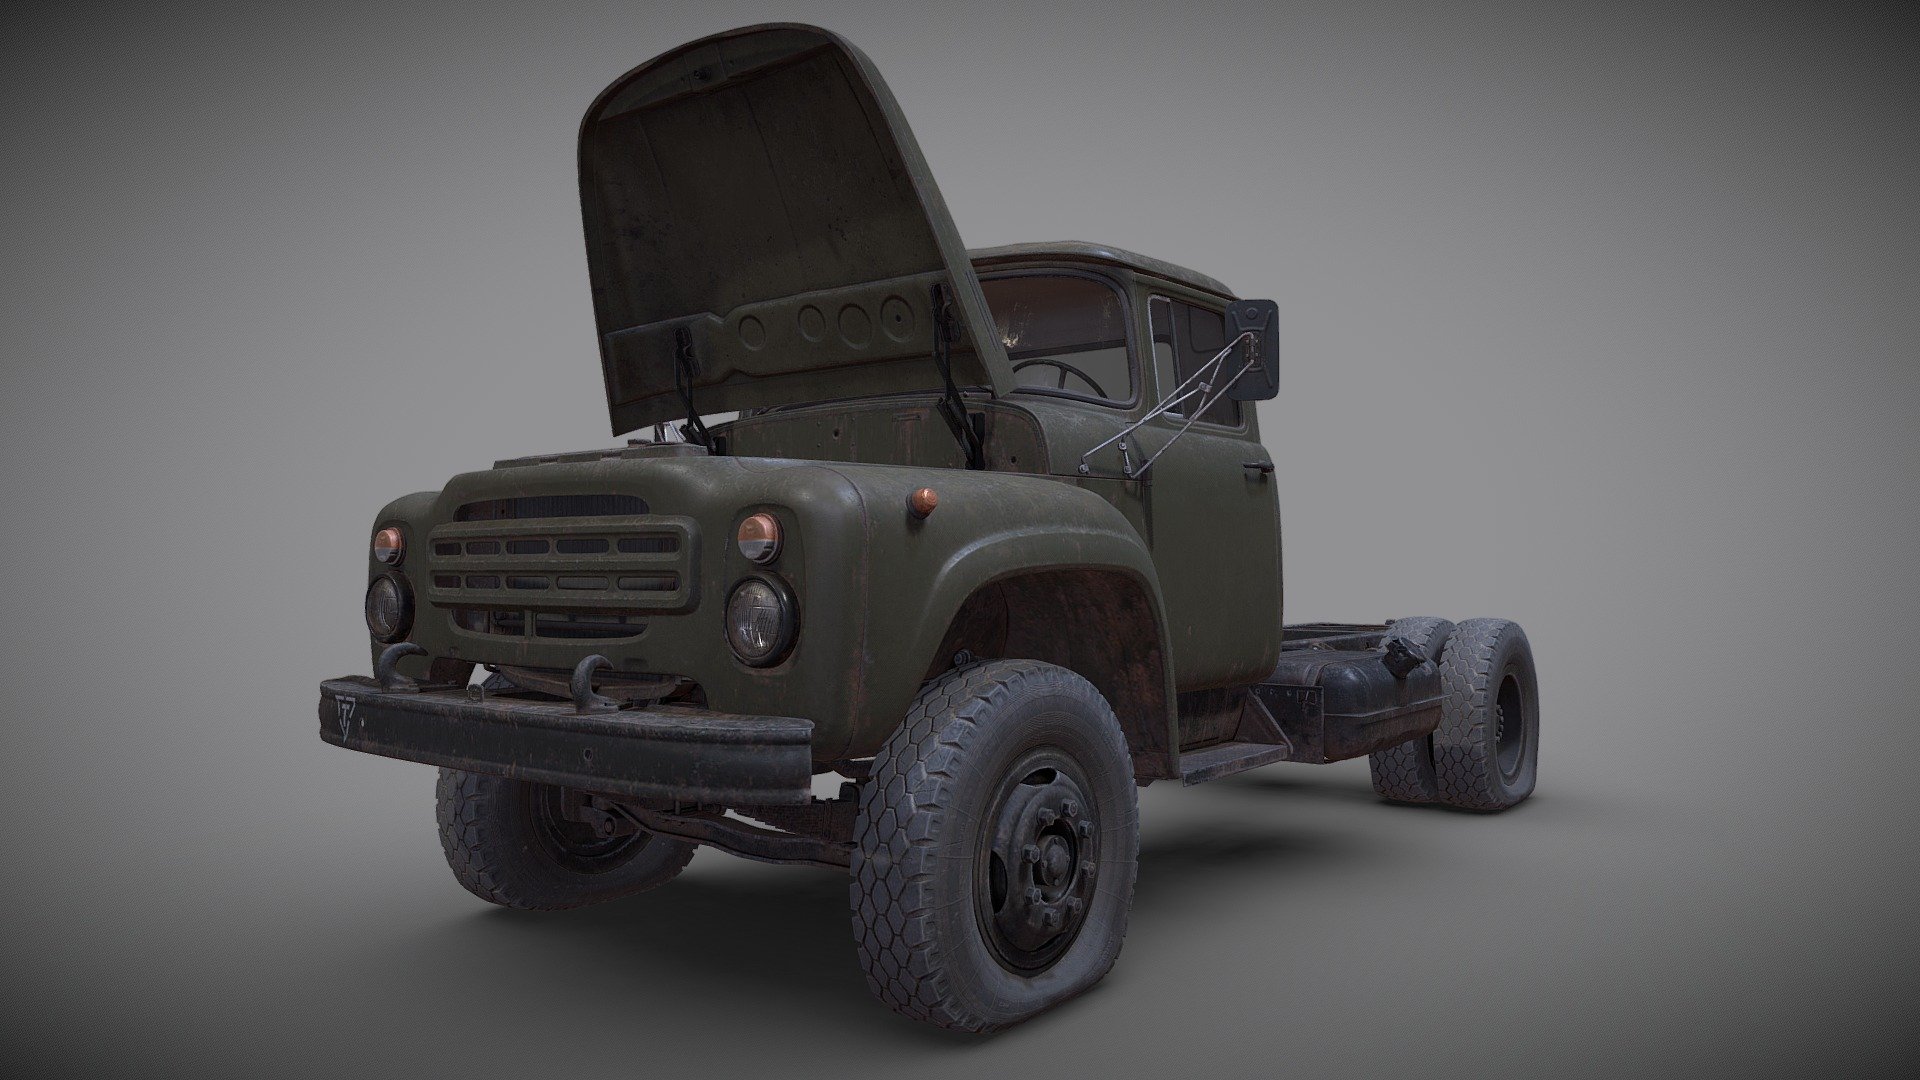 3d model of soviet truck ZIL 130 for DEADSIDE game project - Old truck. ZIL-130 - 3D model by dartp 3d model